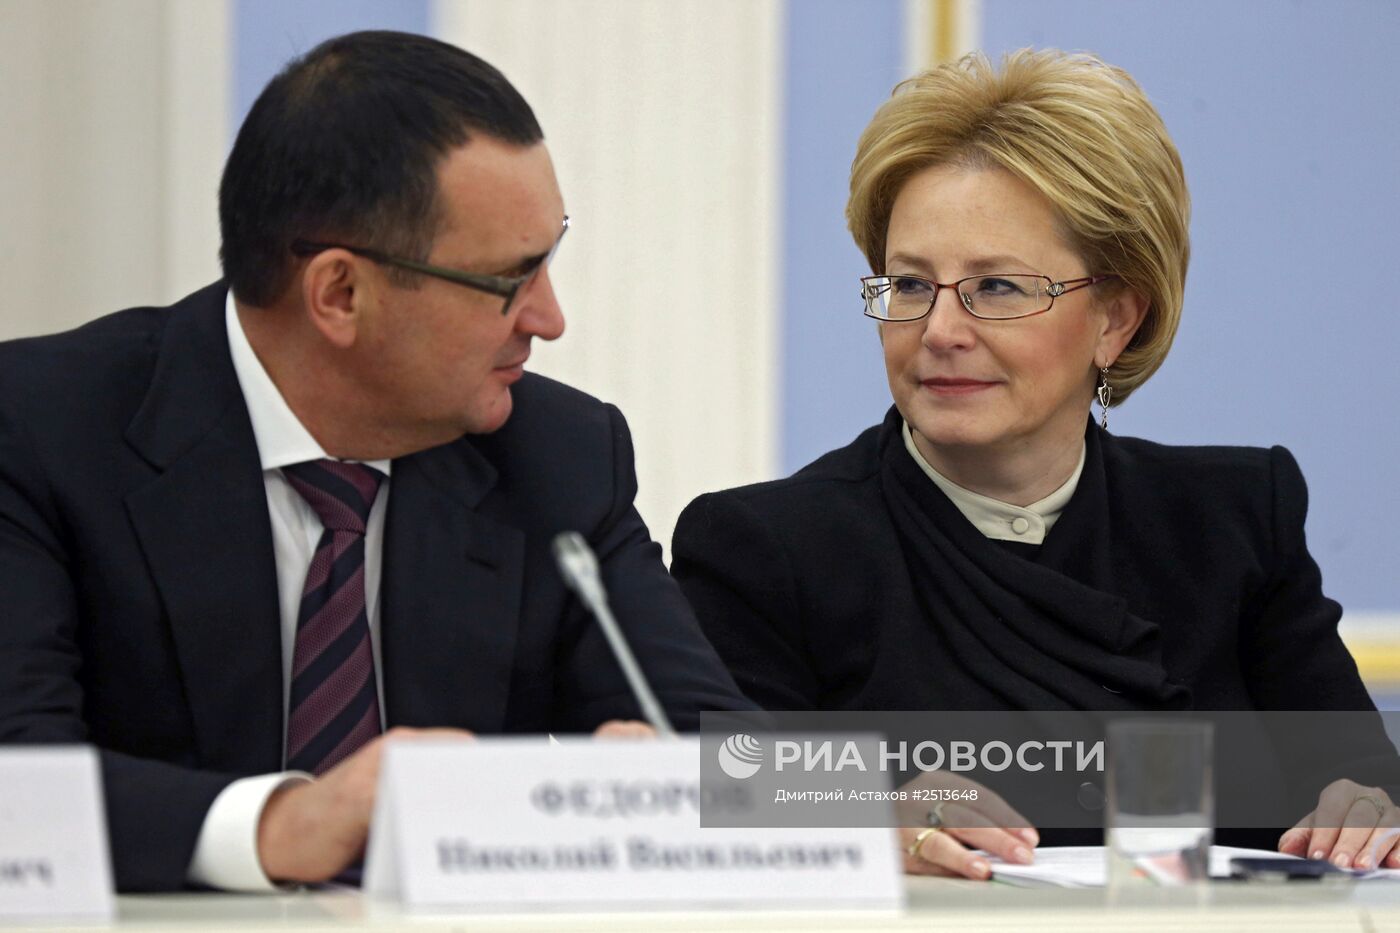 Д.Медведев провел заседание Консультативного совета по иностранным инвестициям в РФ